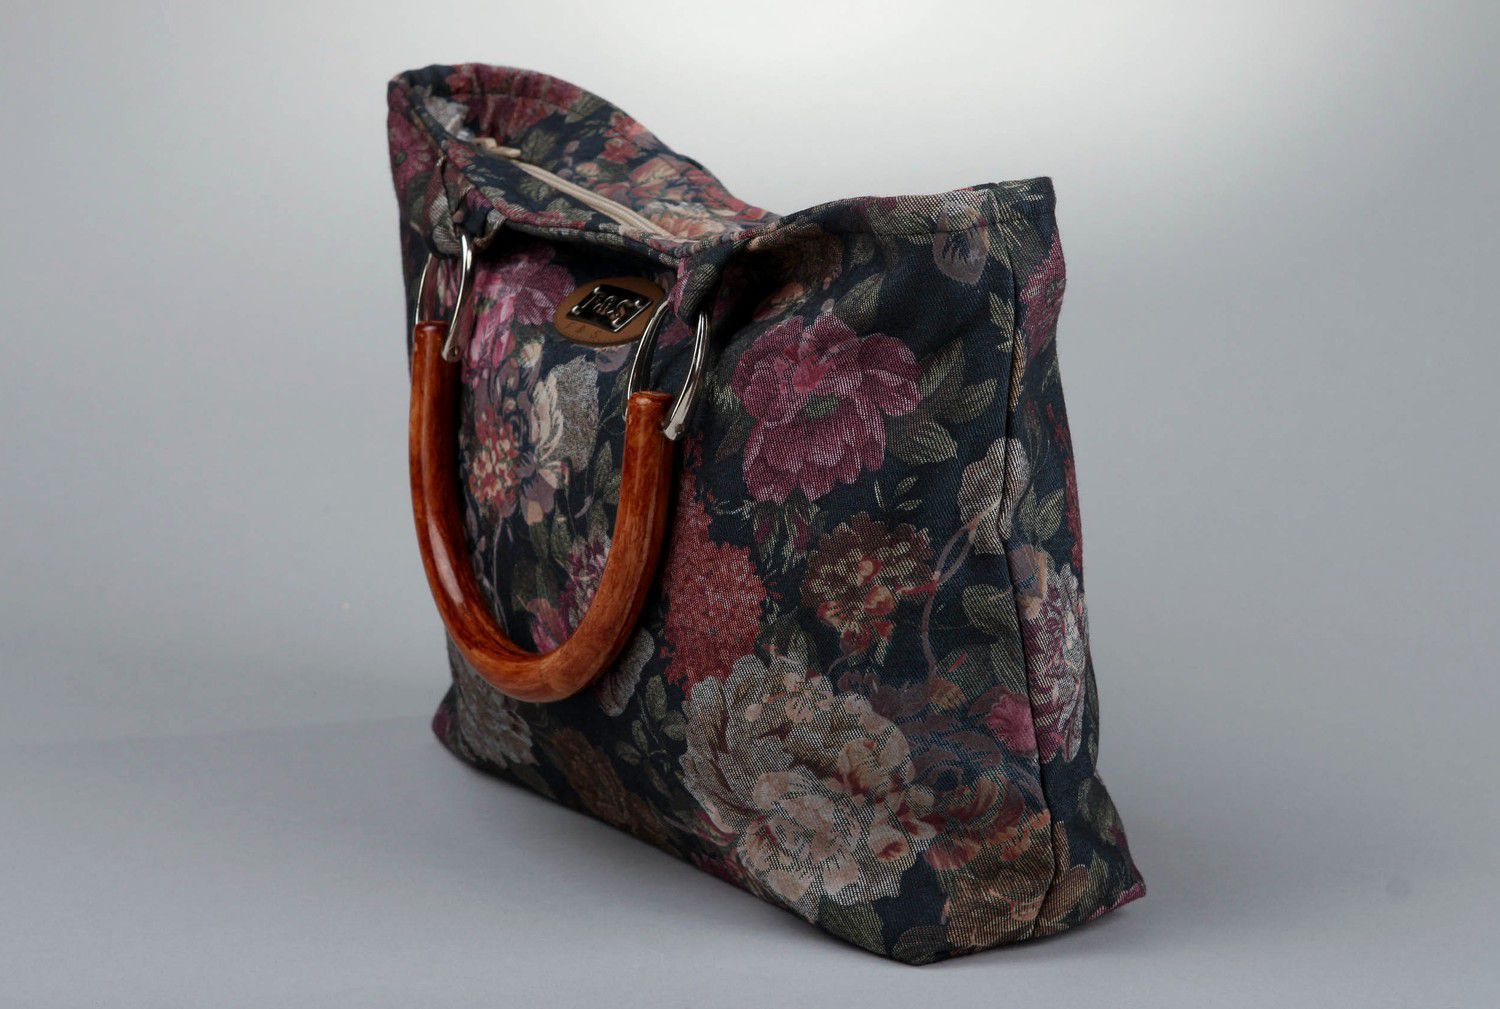 Textil Tasche mit Blumen foto 2